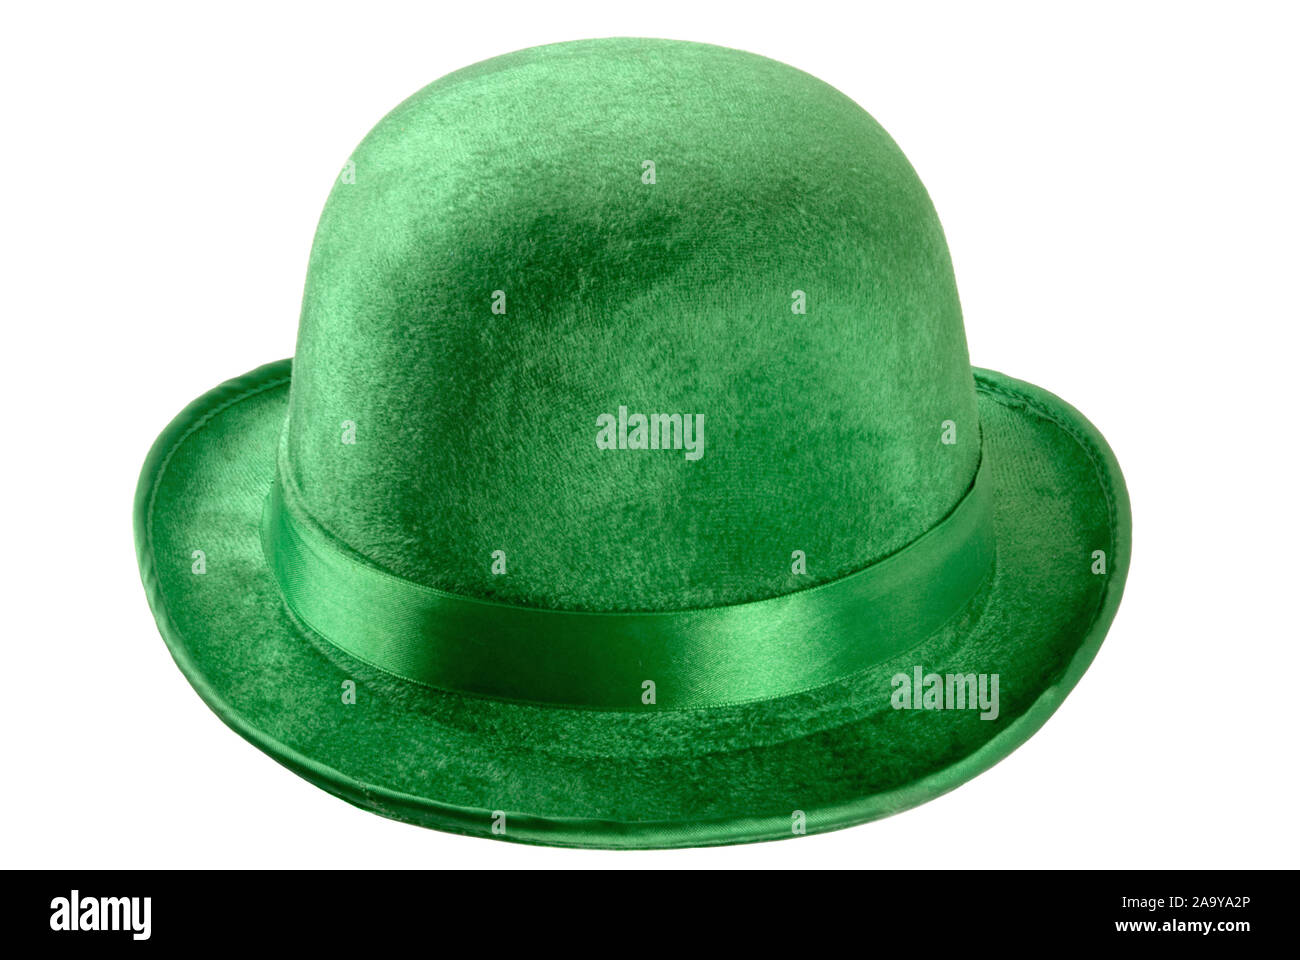 Bombetta verde immagini e fotografie stock ad alta risoluzione - Alamy